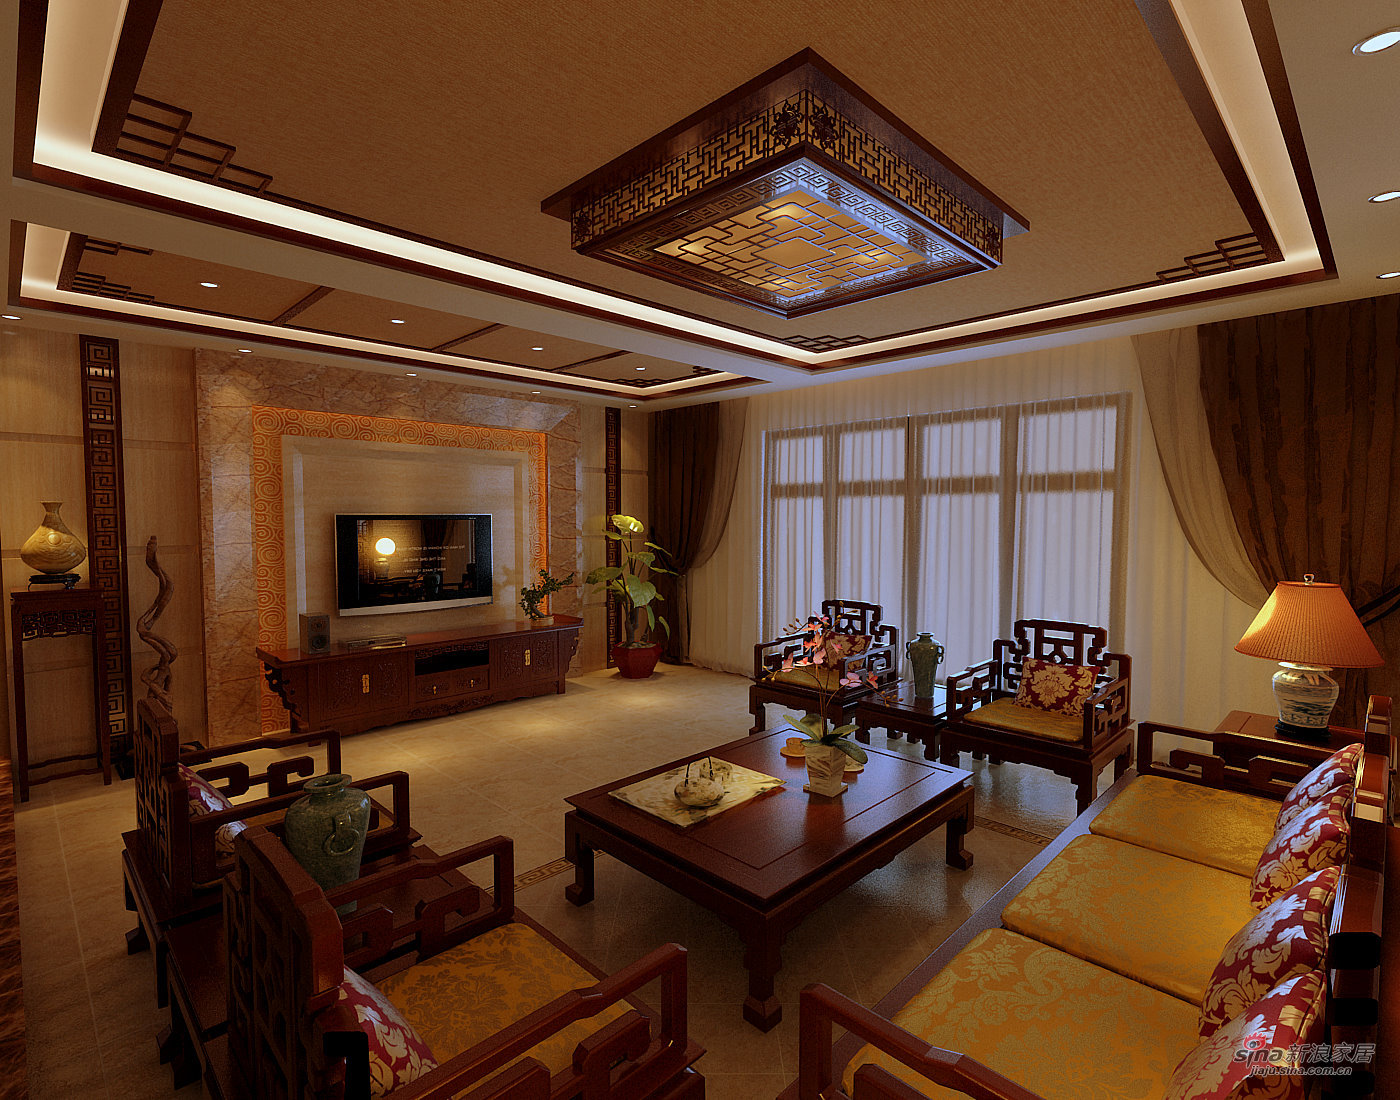 中式 别墅 客厅图片来自用户1907658205在【高清】古典中式惬意的奢华美43的分享